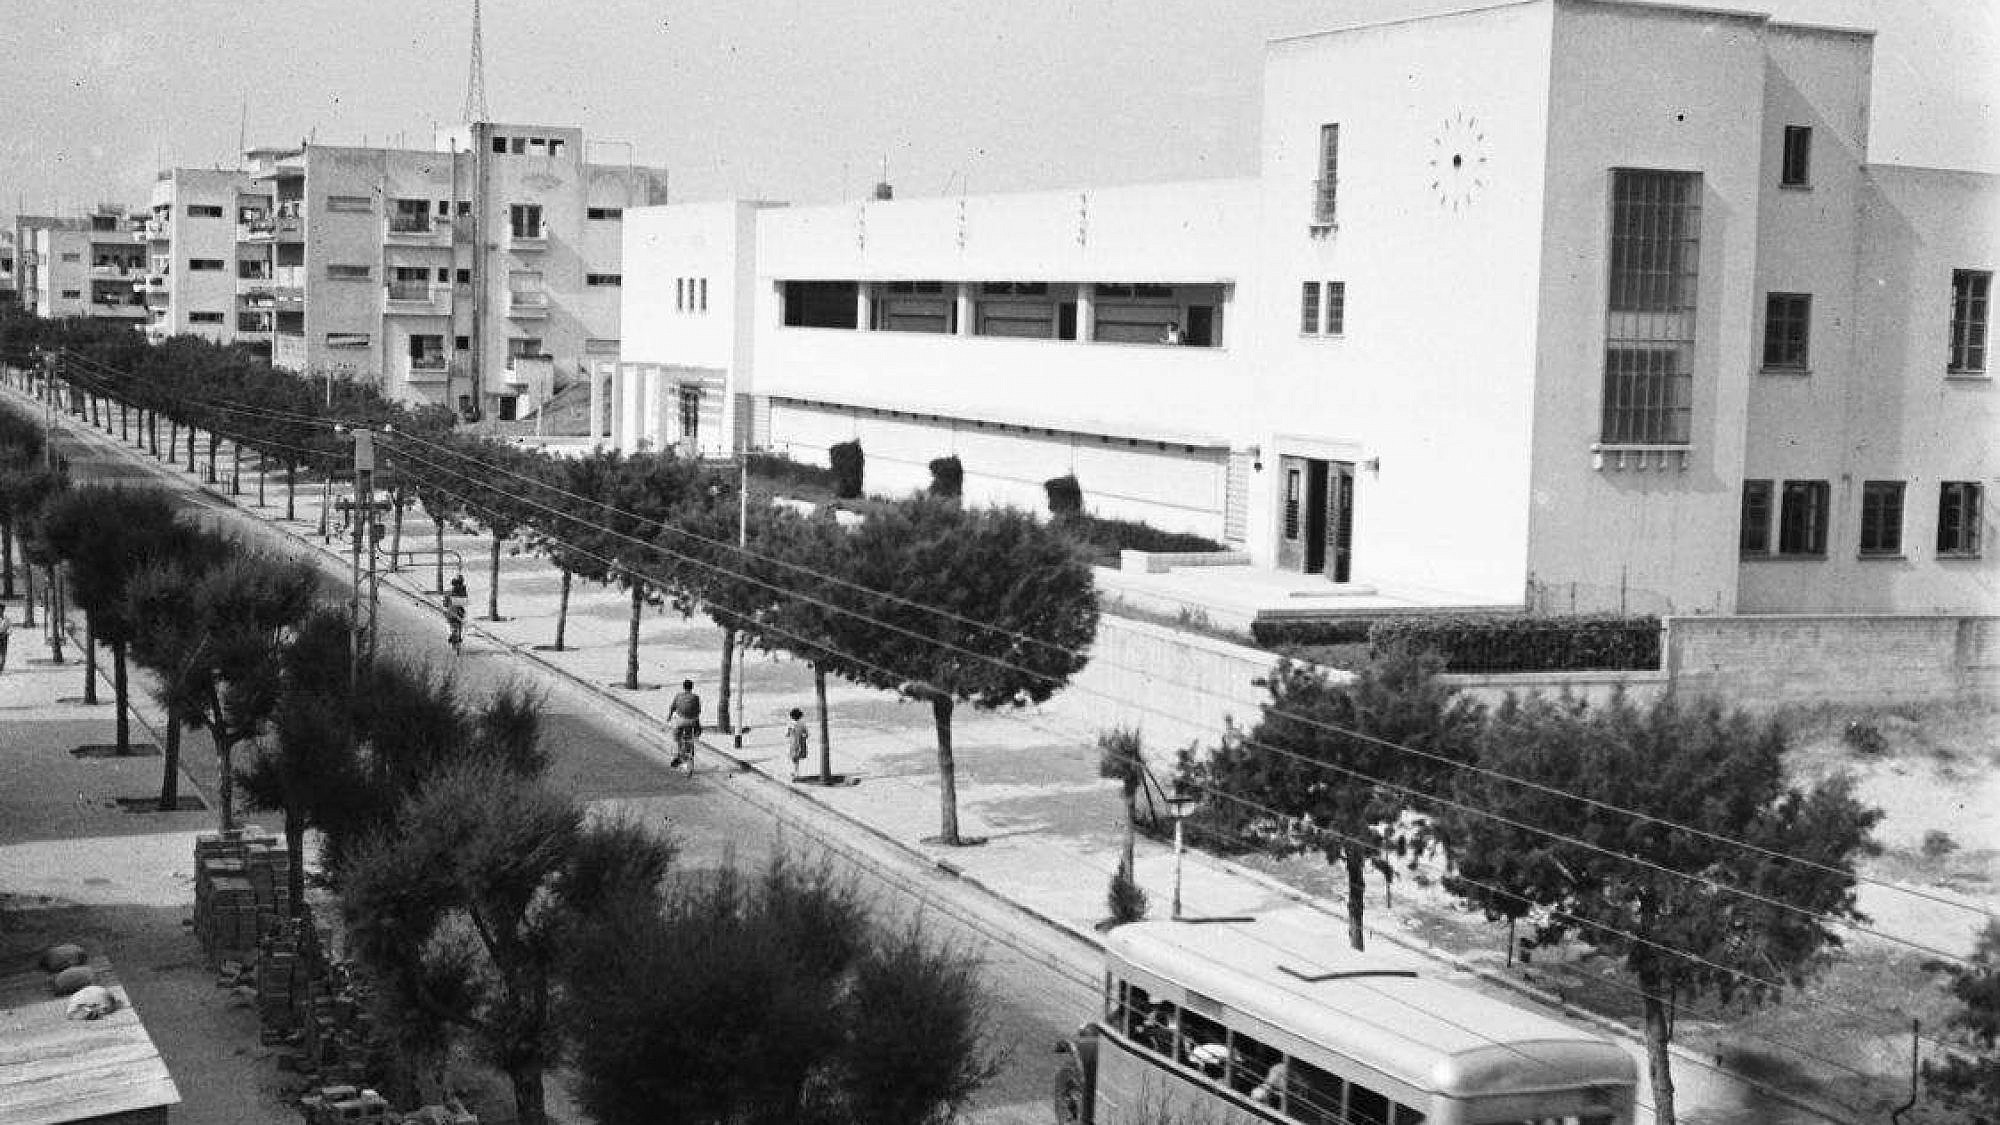 רחוב בן יהודה ב-1946. מחזירים עטרה ליושנה. צילום: זולטן קלוגר, ארכיון המדינה